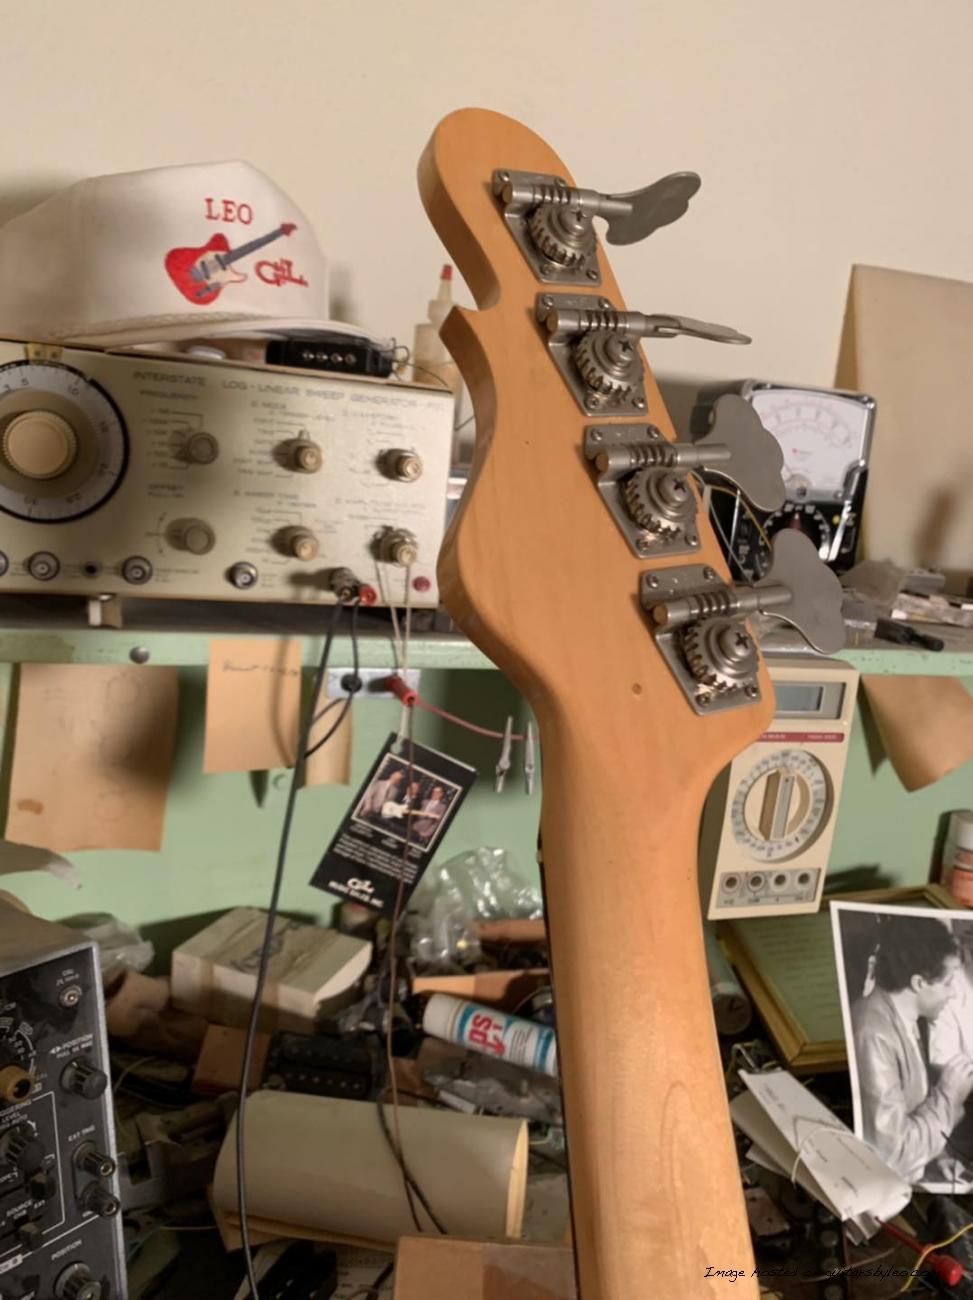 1985 Leo Fender Prototype “Single Coil Bi-pole” pickups x3-7